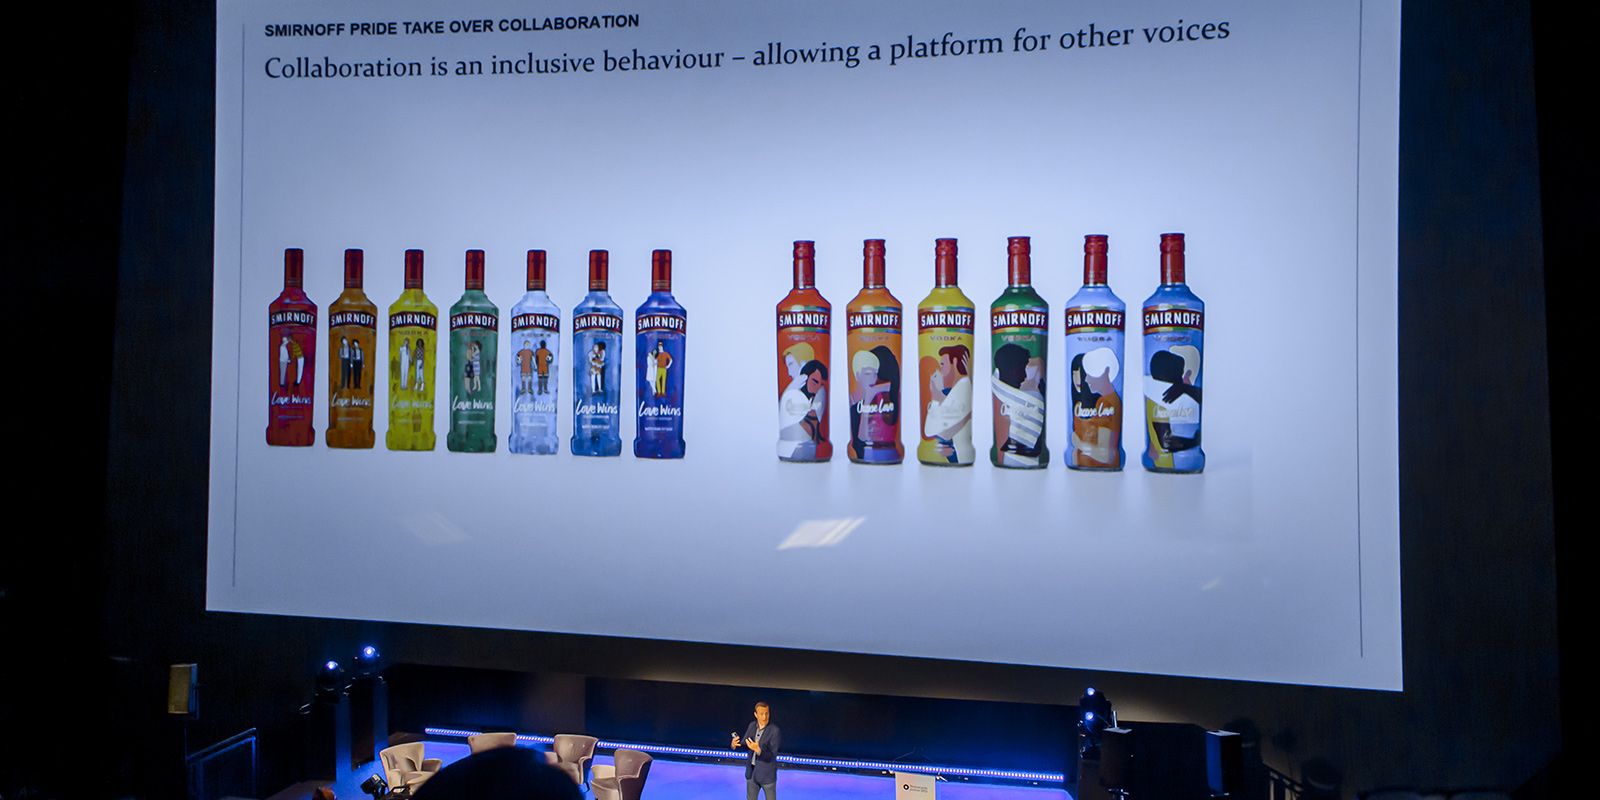 Jeremy Lindley en un escenario proyecta una diapositiva con botellas de vodka Smirnoff edición especial. Etiquetas ilustradas con parejas de diverso género y orientación sexual.